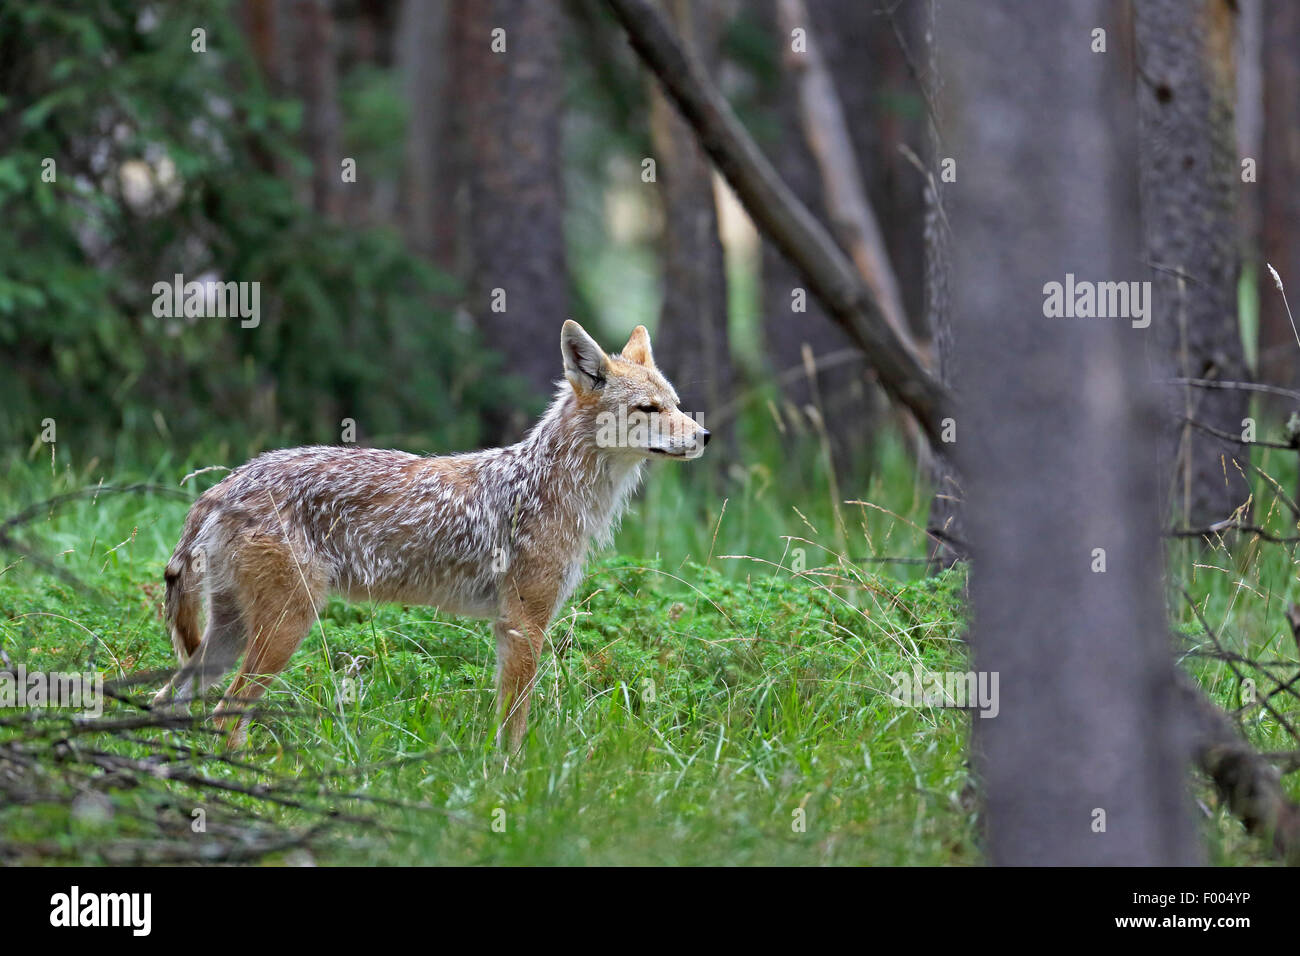 Le coyote (Canis latrans), se trouve dans le bois, le Canada, l'Alberta, parc national de Banff Banque D'Images